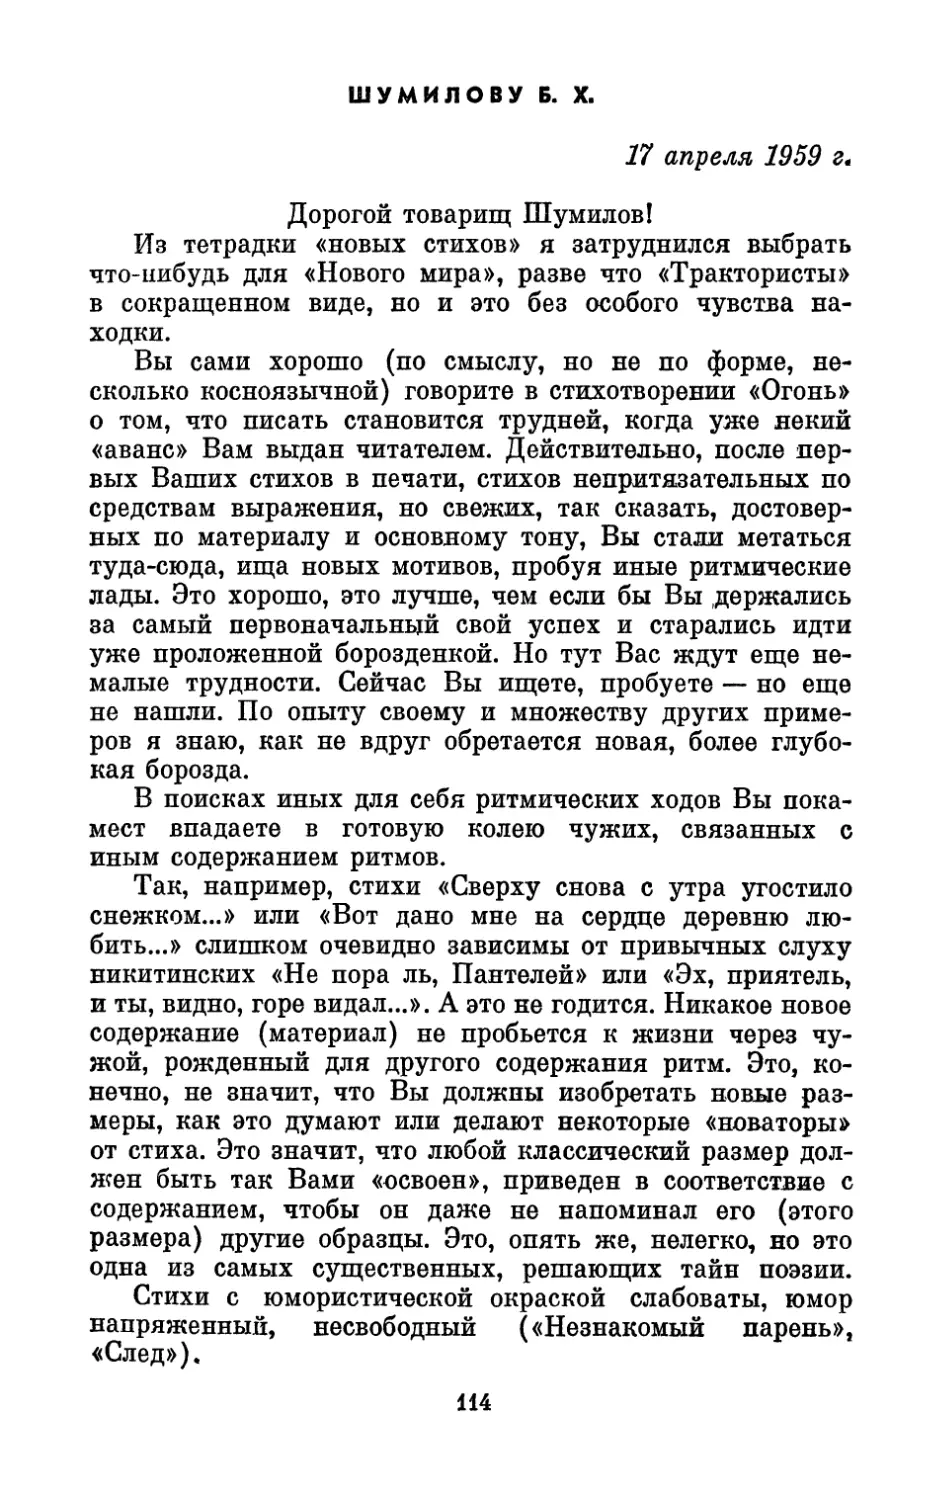 Шумилову Б. X., 17 апреля 1959 г.